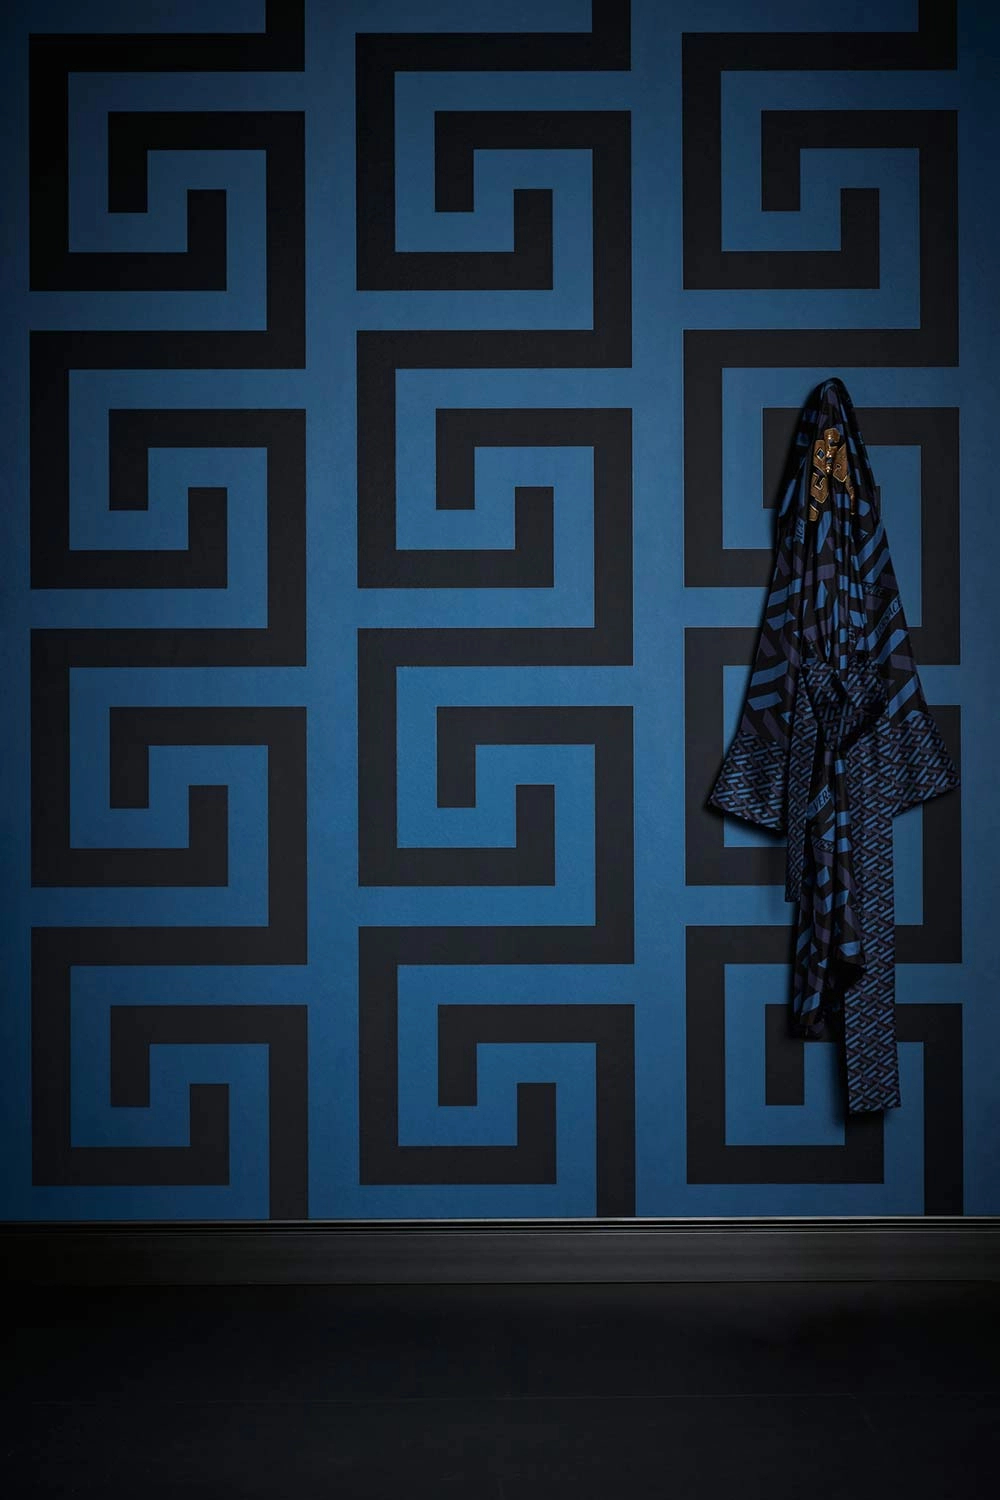 Versace design tapéta fekete kék elegáns geometrikus mintával 70cm széles